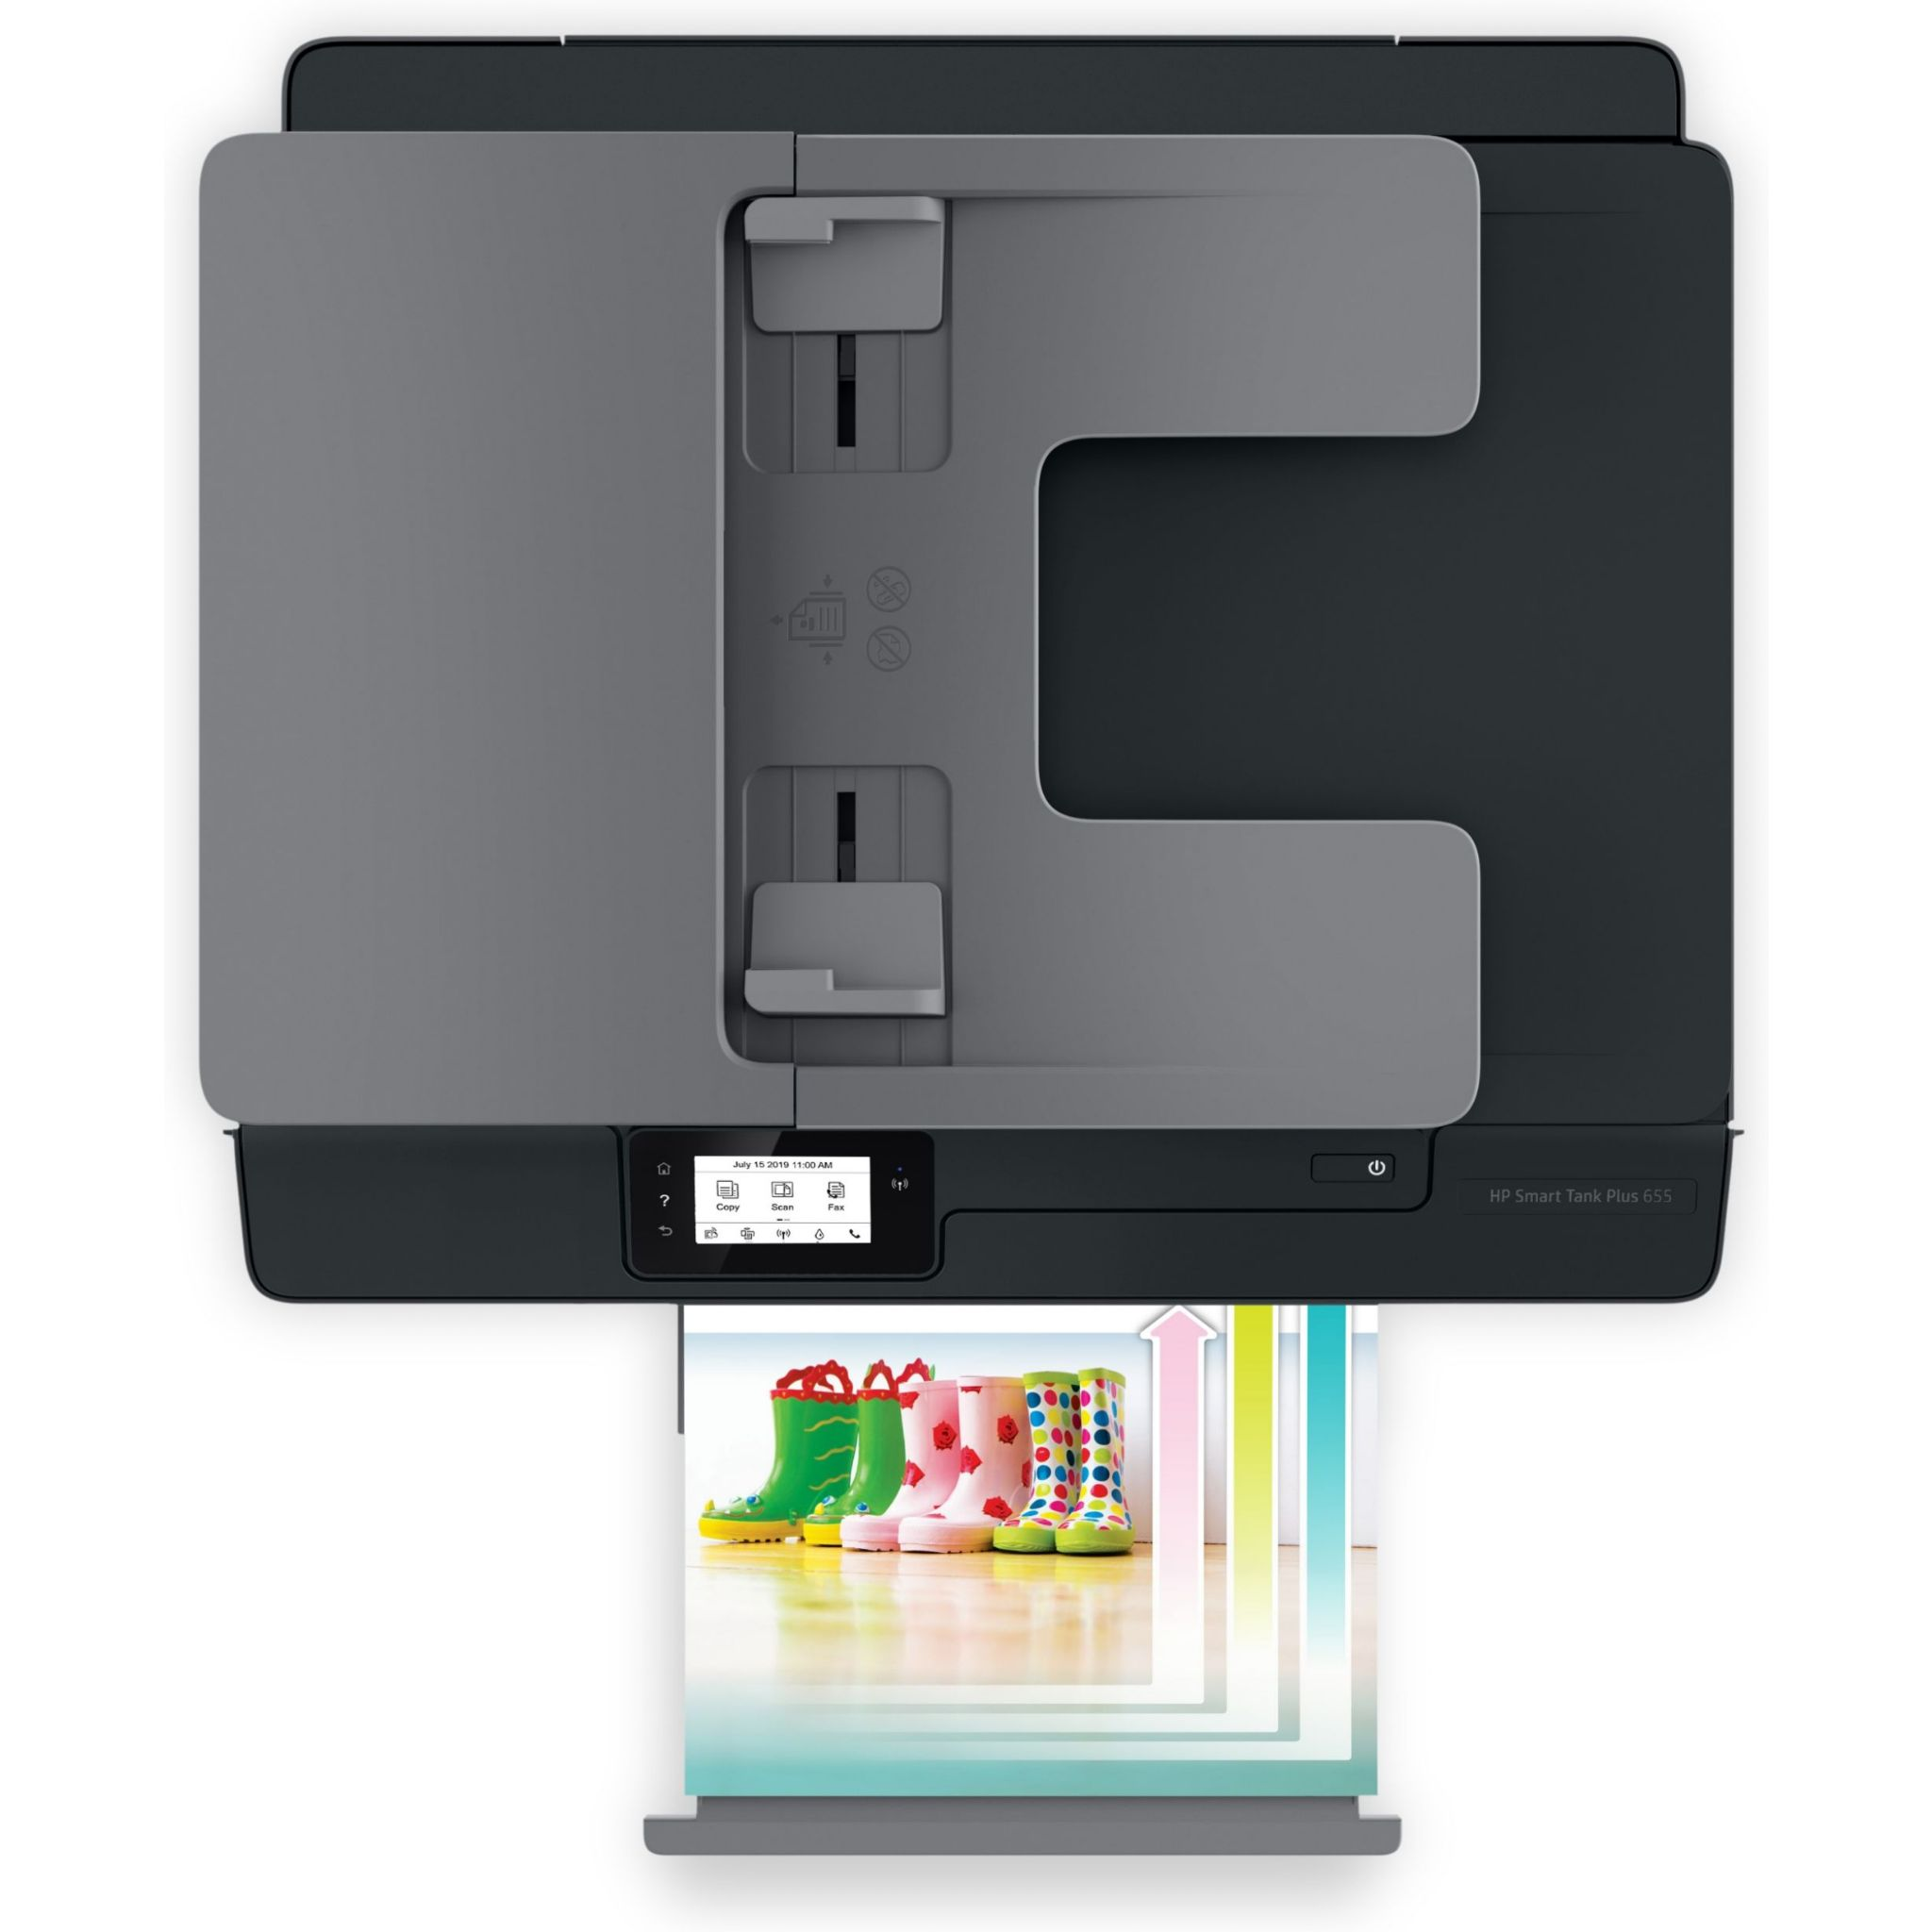 PLUS WLAN Inkjet Thermal 655 Multifunktionsdrucker SMART TANK HP